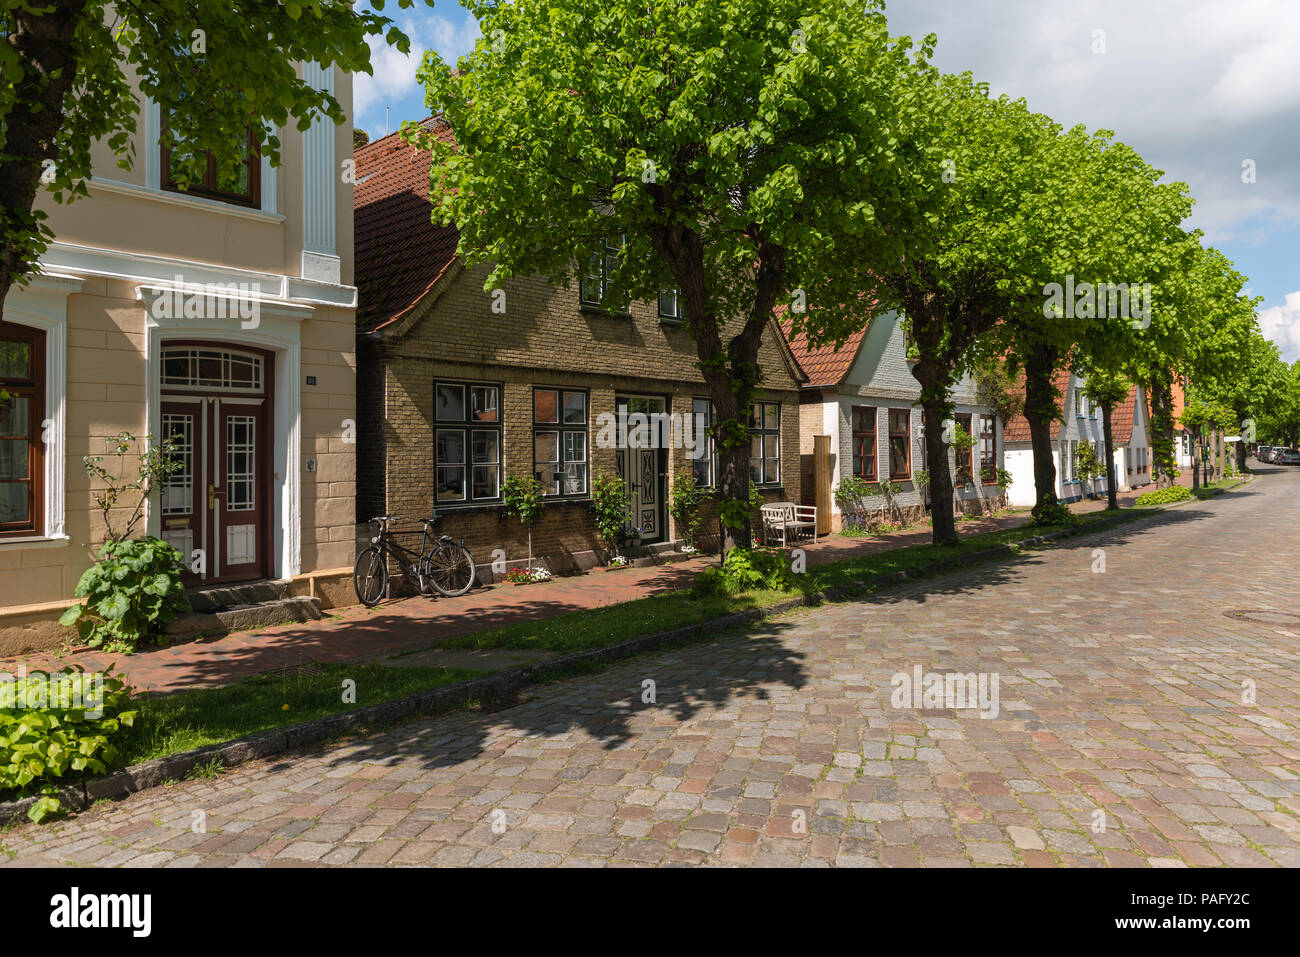 Maisons dans la Lange Strasse, la seule rue dans la plus petite ville d'Allemagne, Arnis, Schlei, Angeln, Schleswig-Holstein, Allemagne, Allemagne Banque D'Images